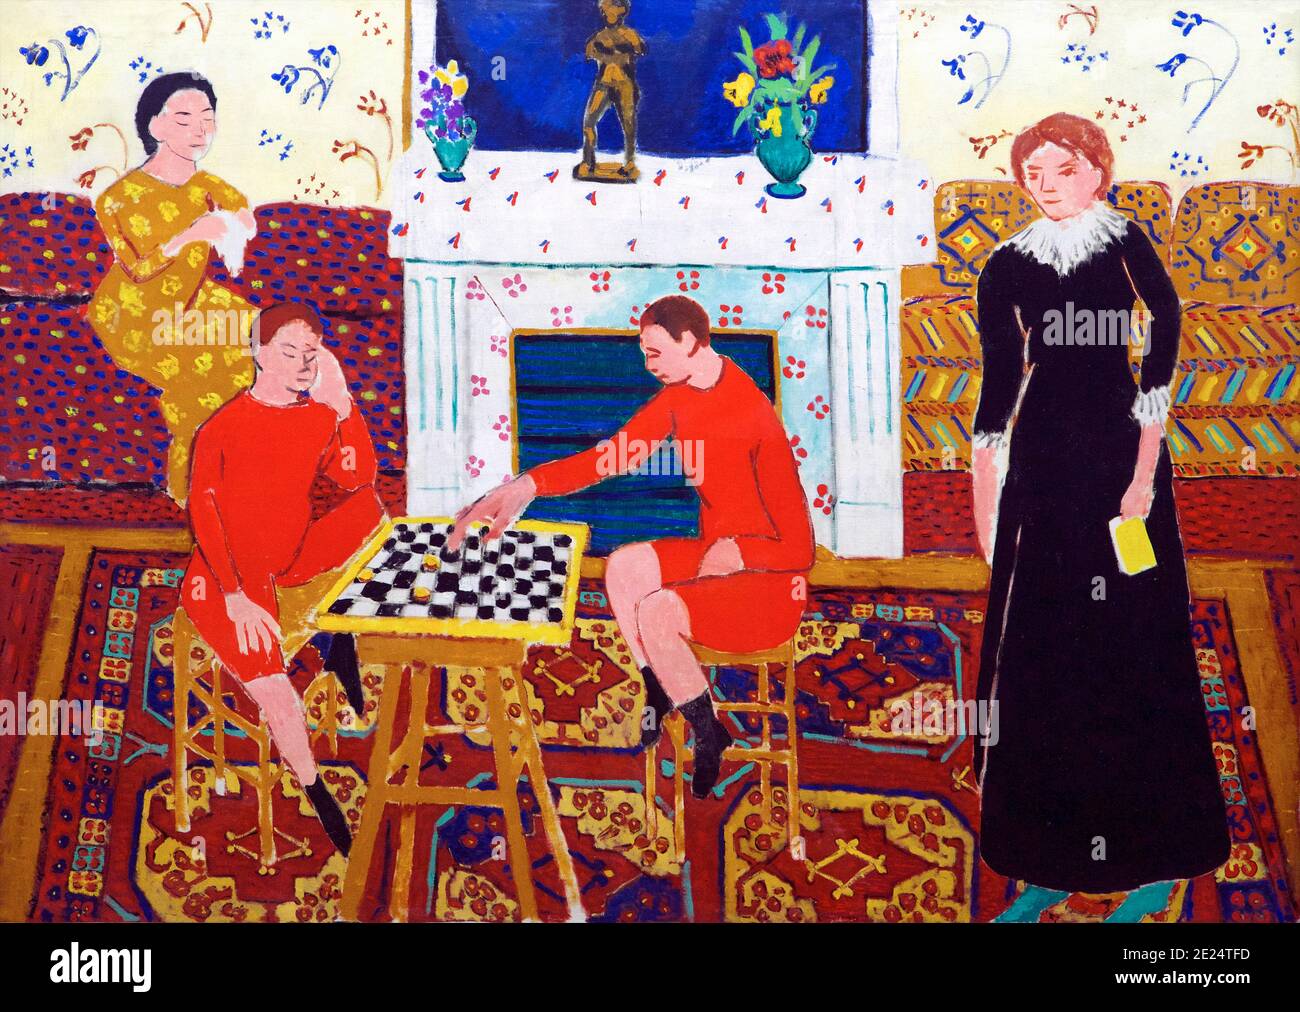 La famille du peintre, Henri Matisse, 1911, Musée de l'Ermitage, Saint-Pétersbourg, Russie Banque D'Images